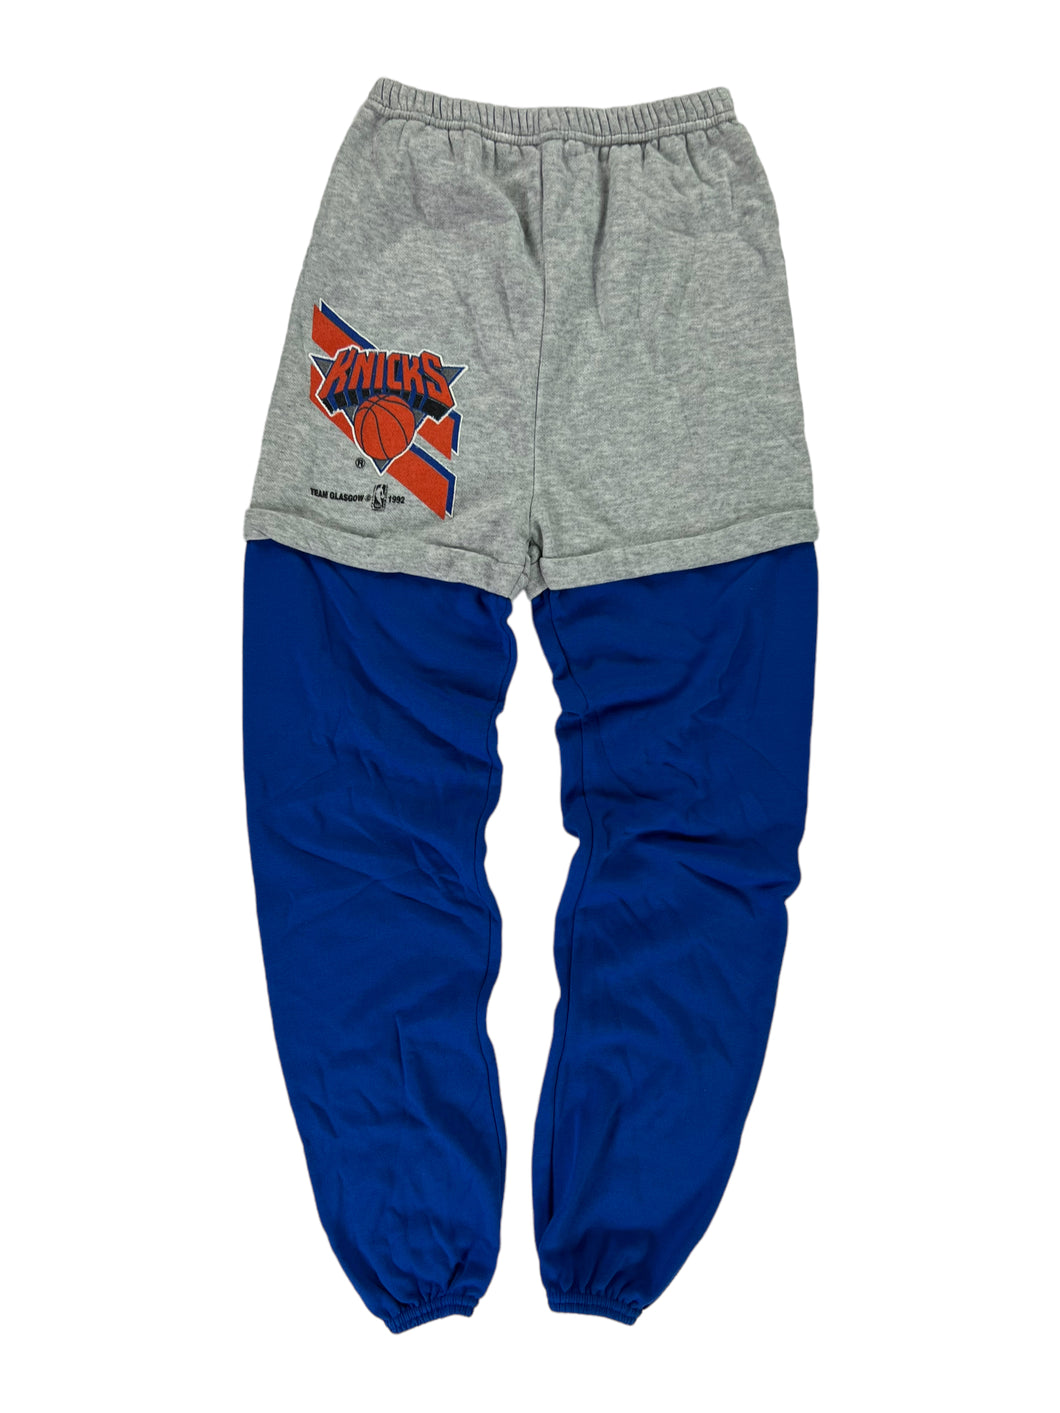 Vintage 1992 New York NY Knicks NBA YOUTH sweatpants (YXL)